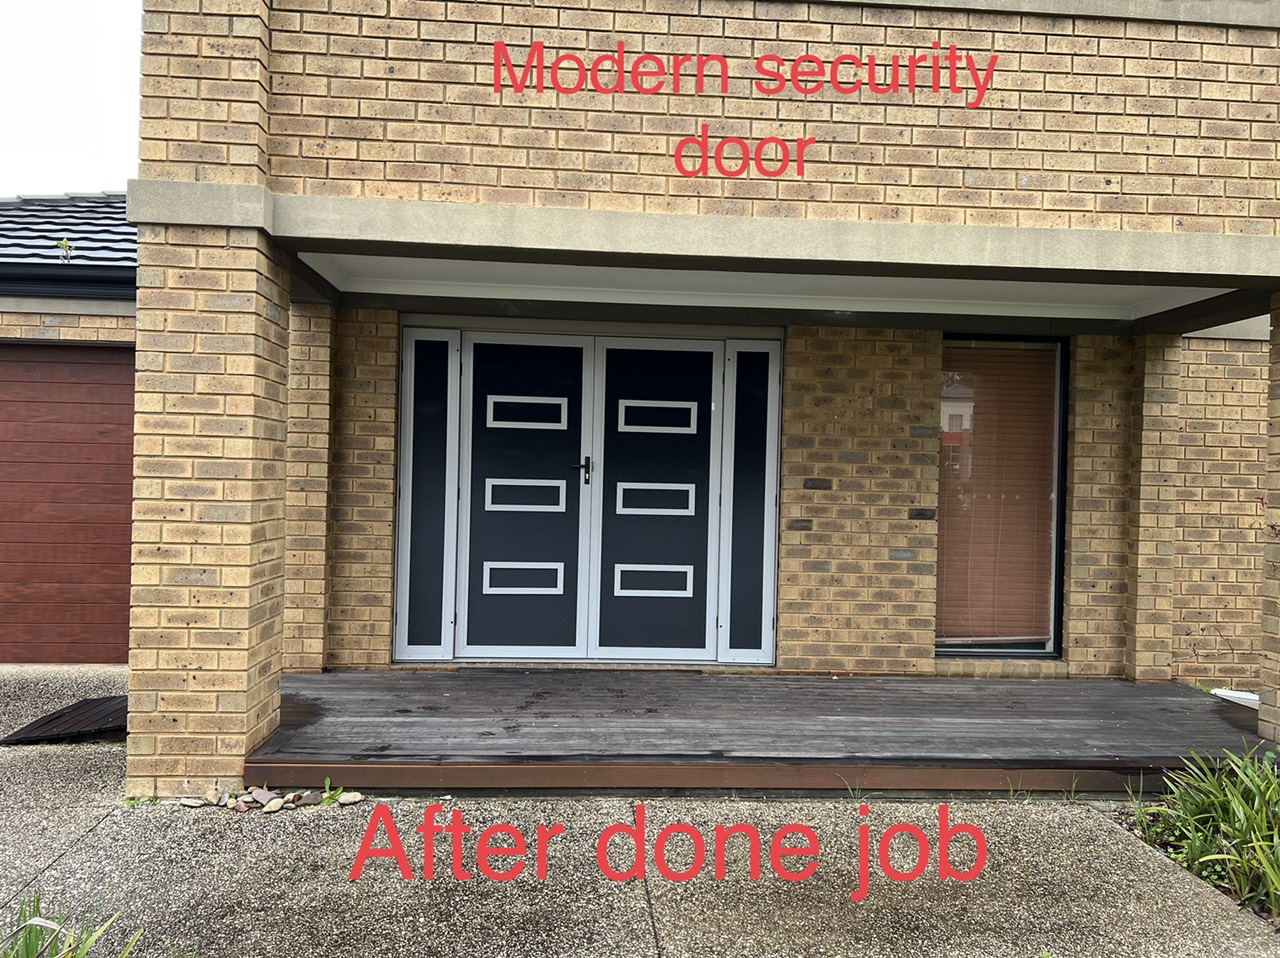 Security Doors & Screen 06